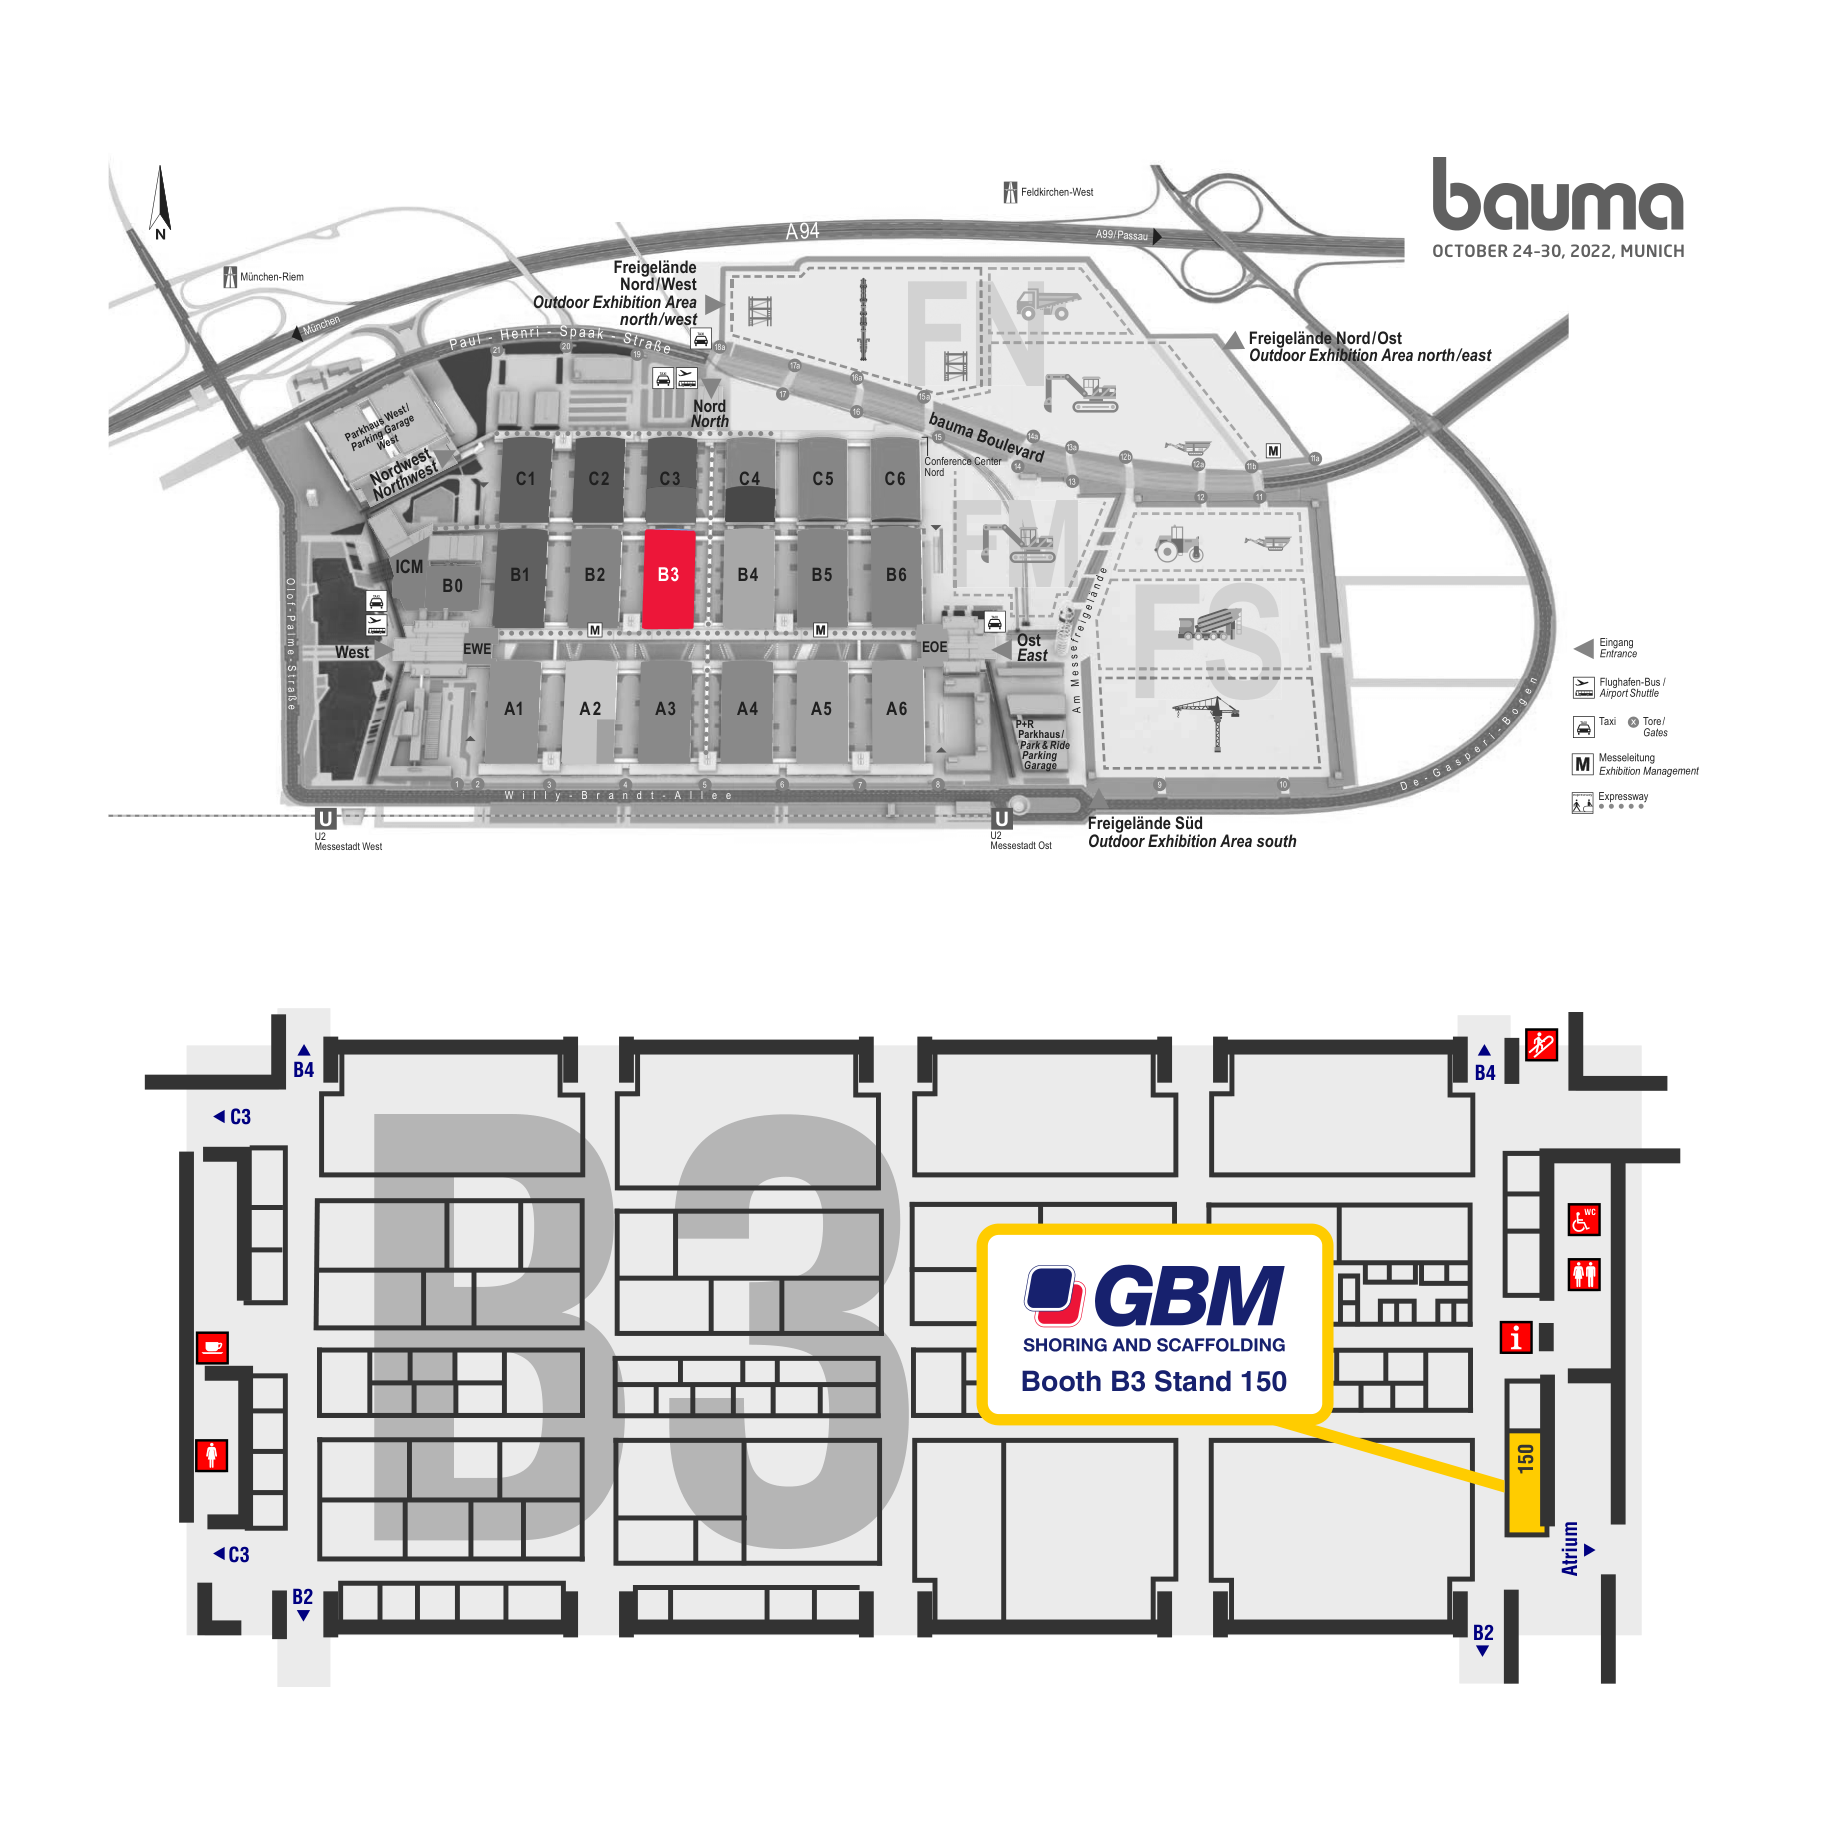 BAUMA 2022 Map Hall B3